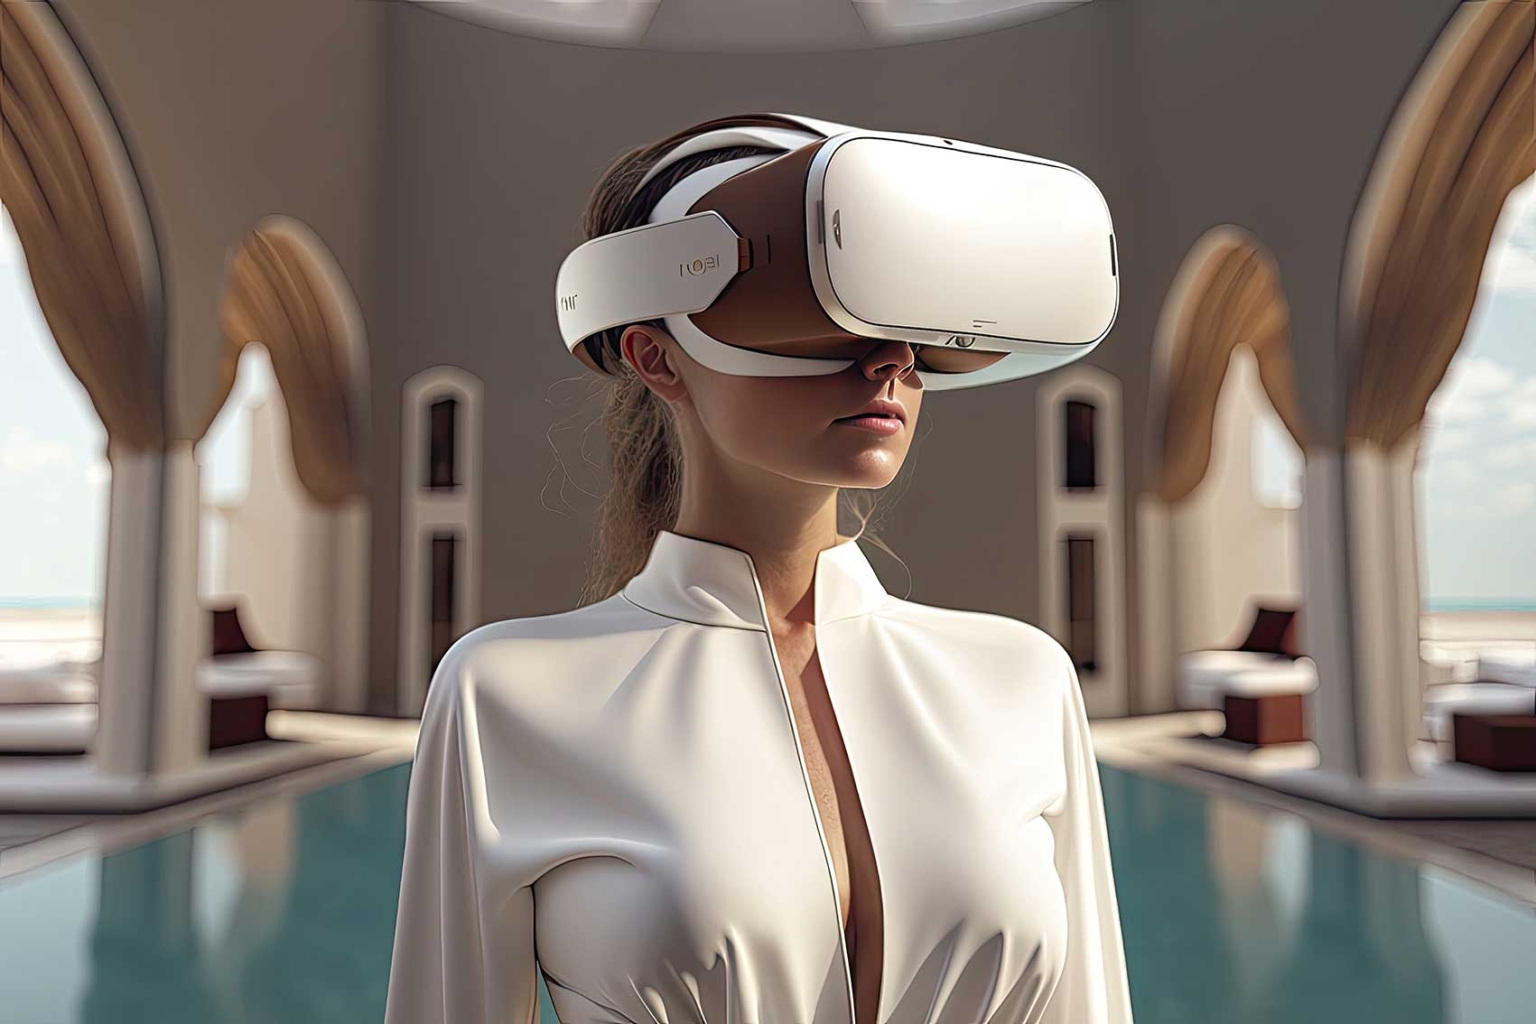 Madrid realidad virtual inteligencia artificial